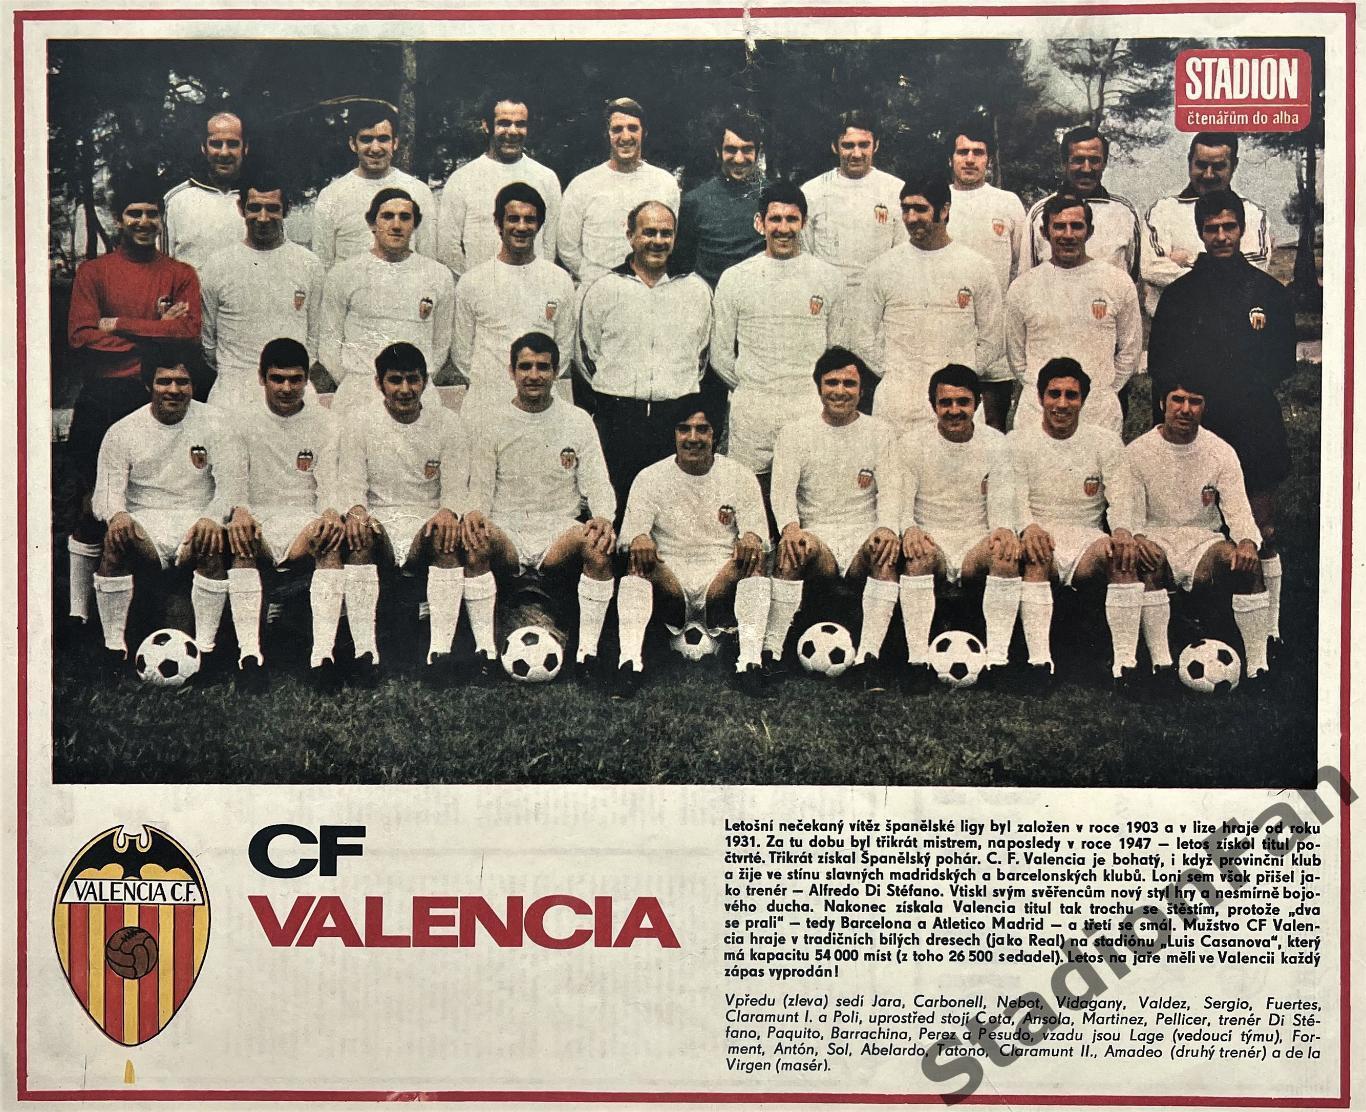 Постер из журнала Стадион (Stadion) - Valencia, 1971.